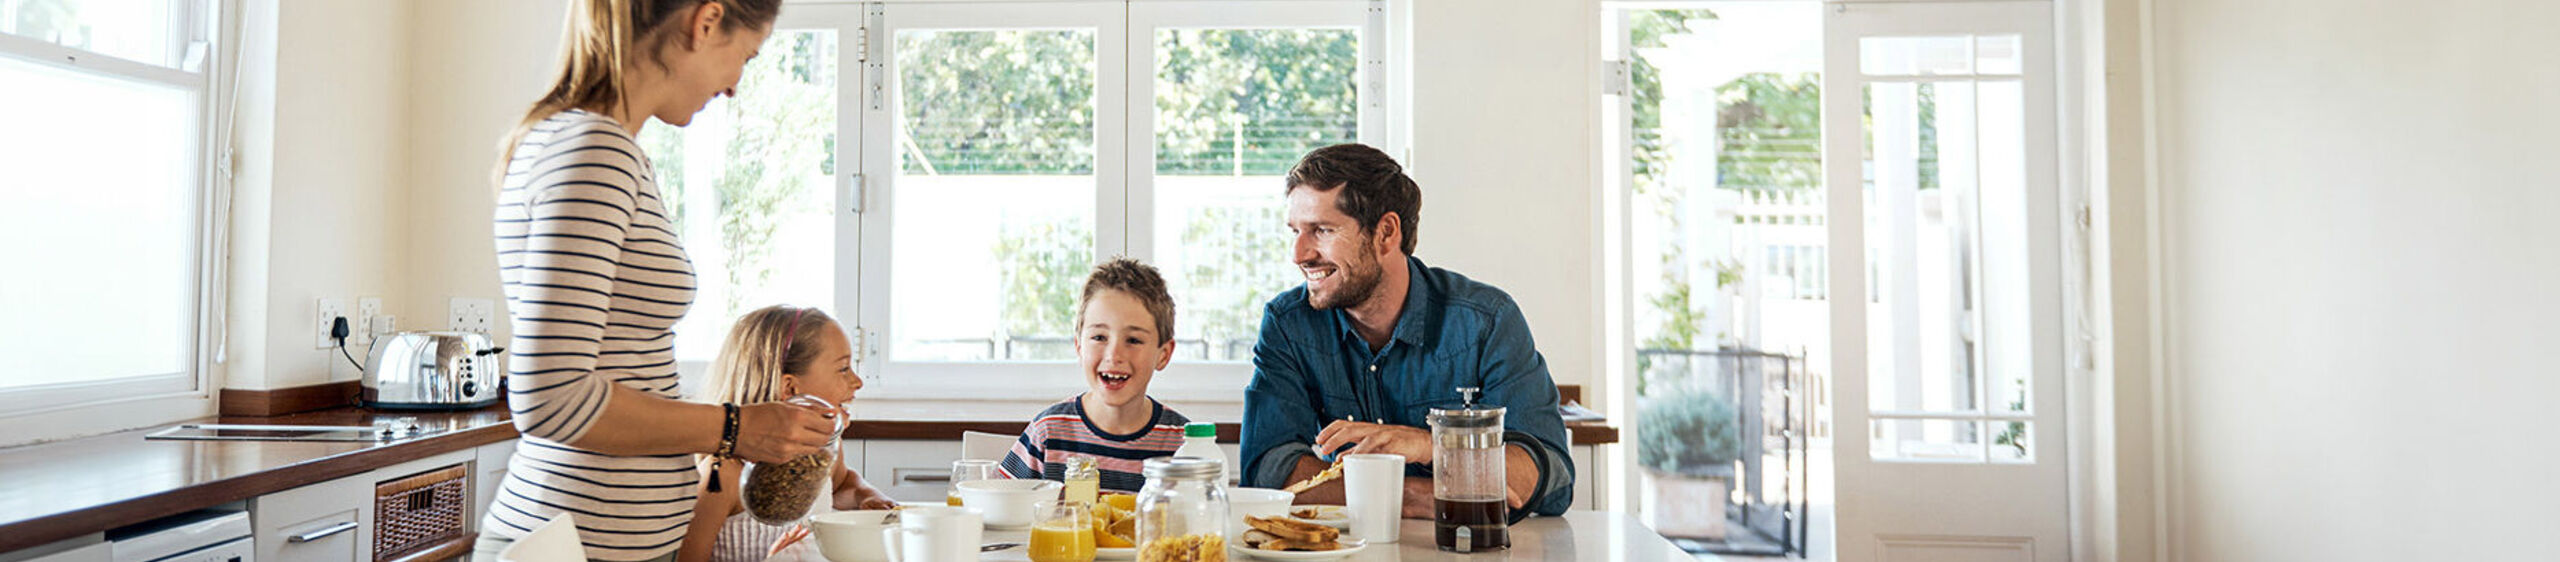 Eine Familie mit 2 Kindern sitzt in einer hellen Küche am Frühstückstisch